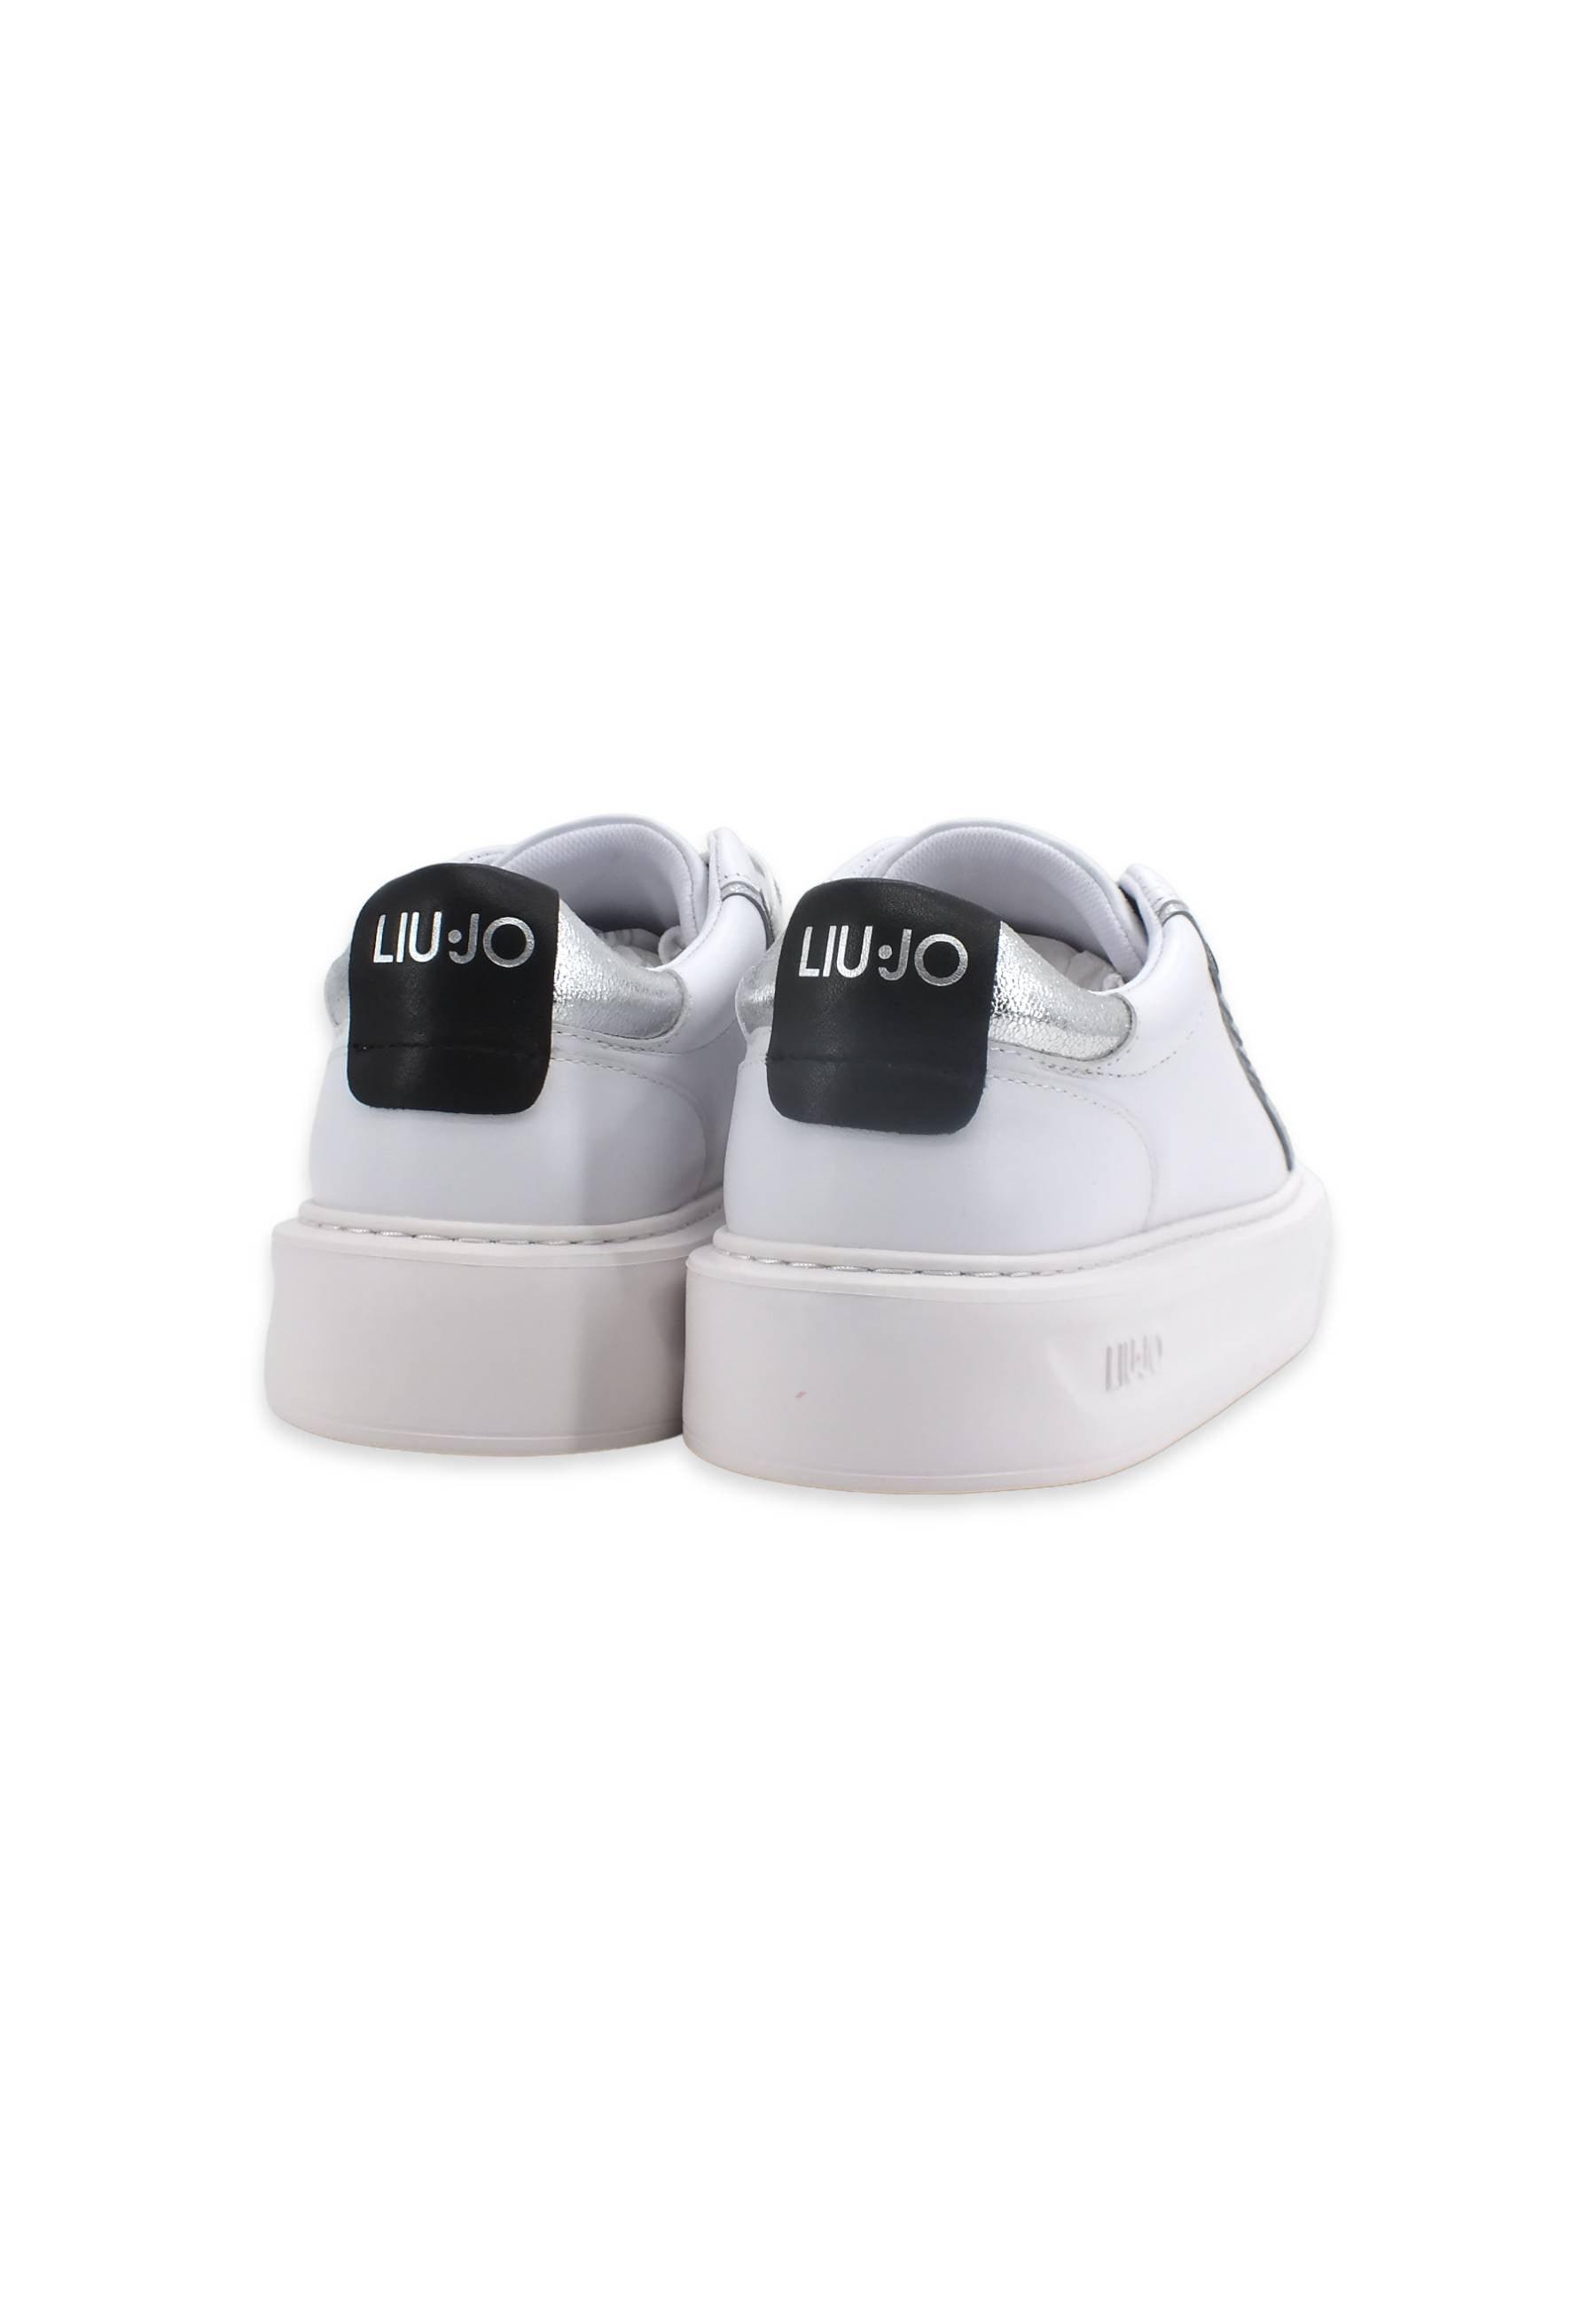 LIU JO Kylie 06 Sneaker Donna White BF2115P0102 - Sandrini Calzature e Abbigliamento